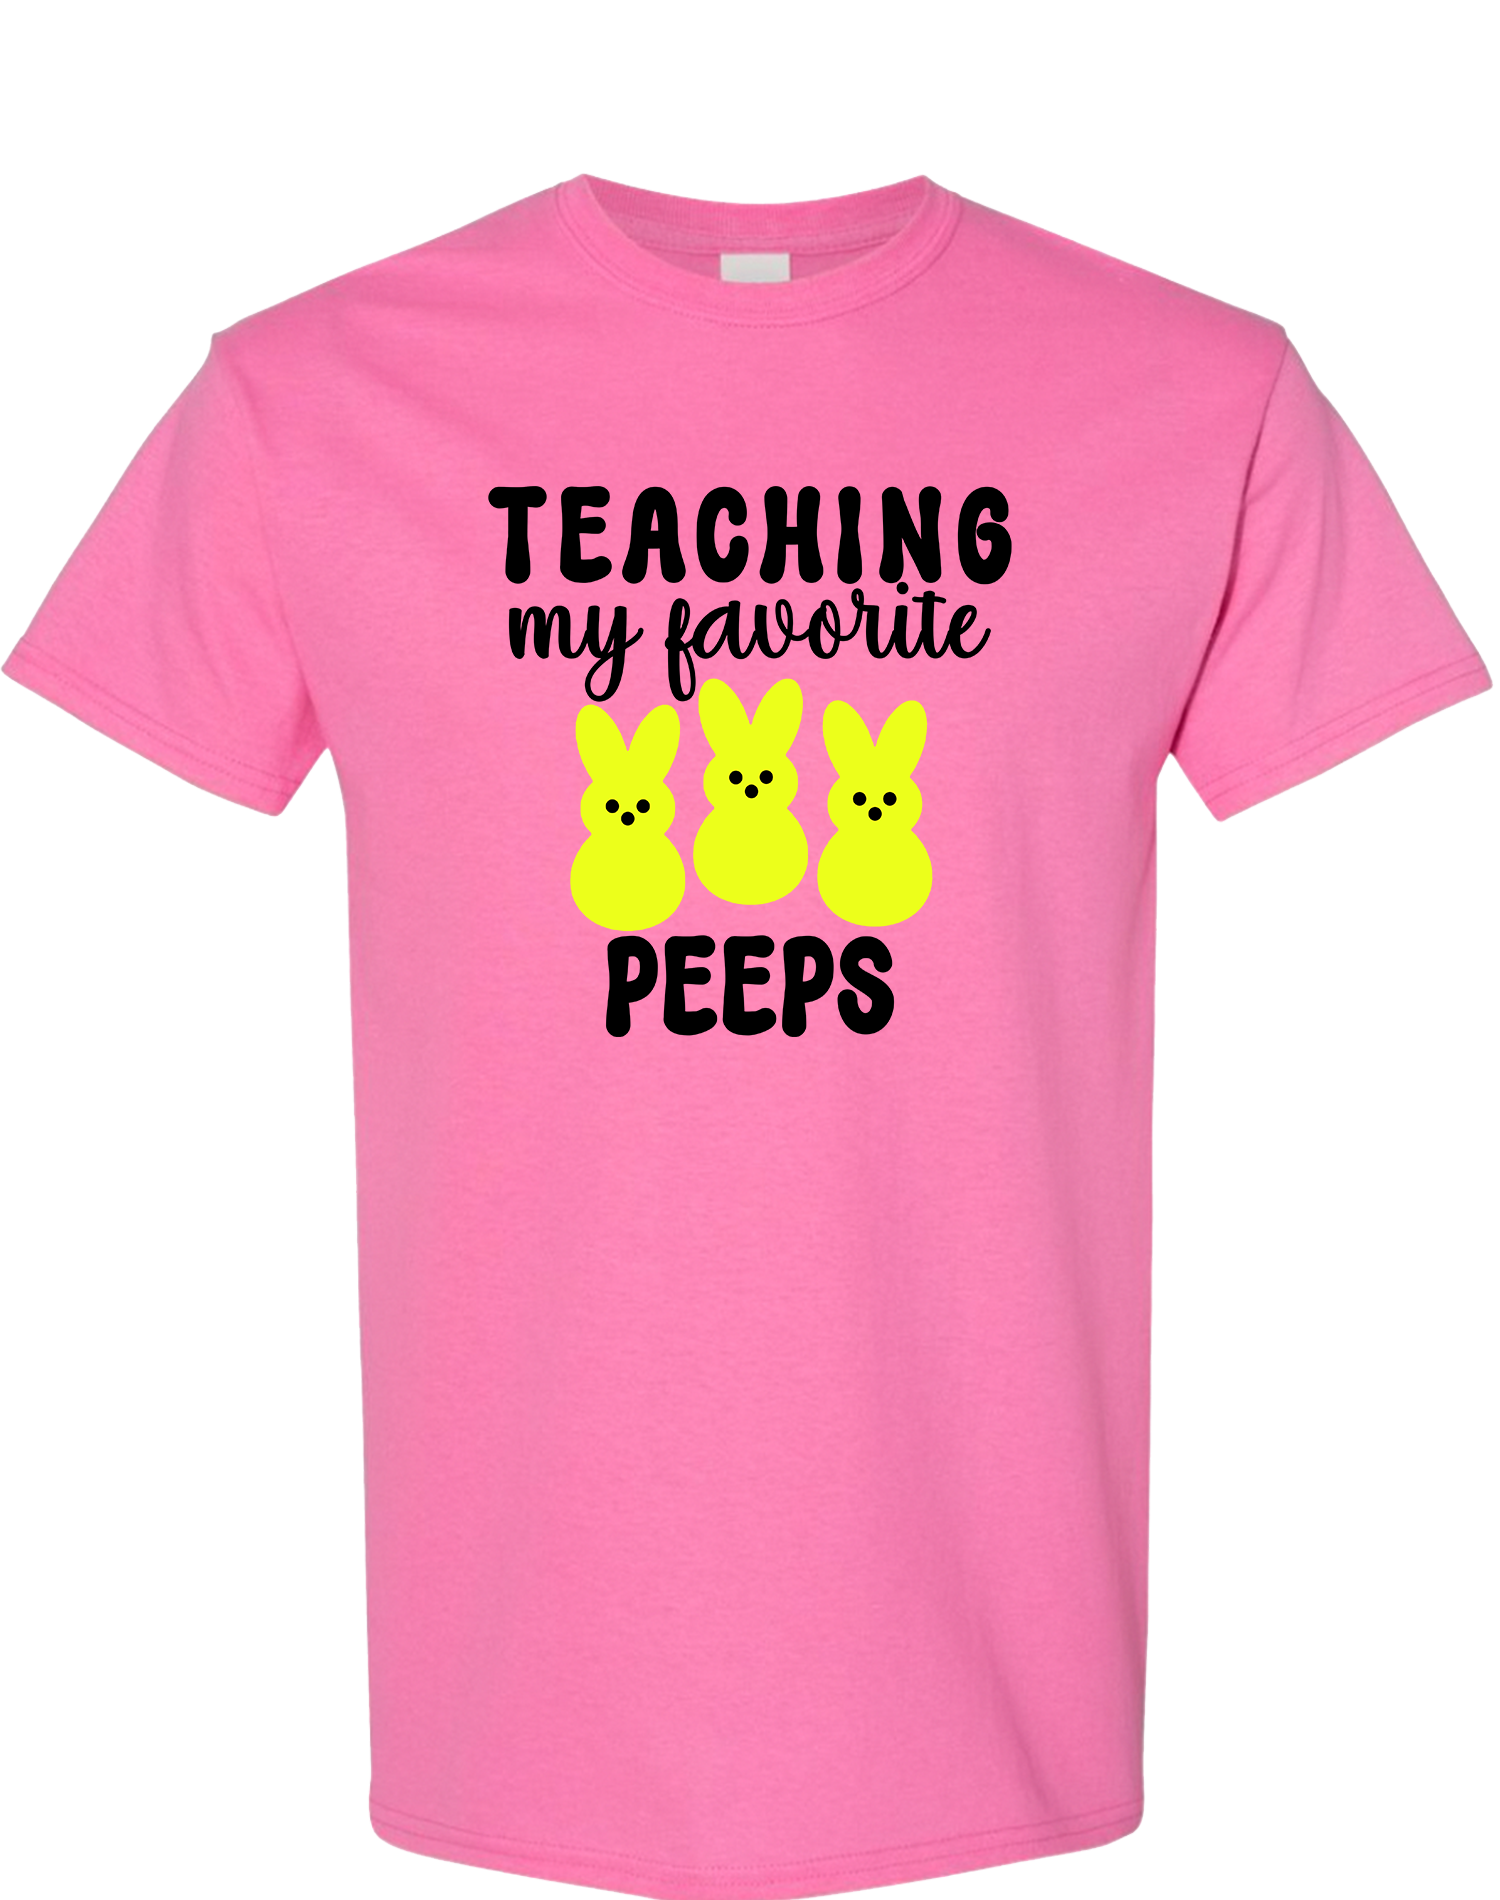 My Job It's Just Teach, Teacher Sweatshirt, Pink Teacher Shirt